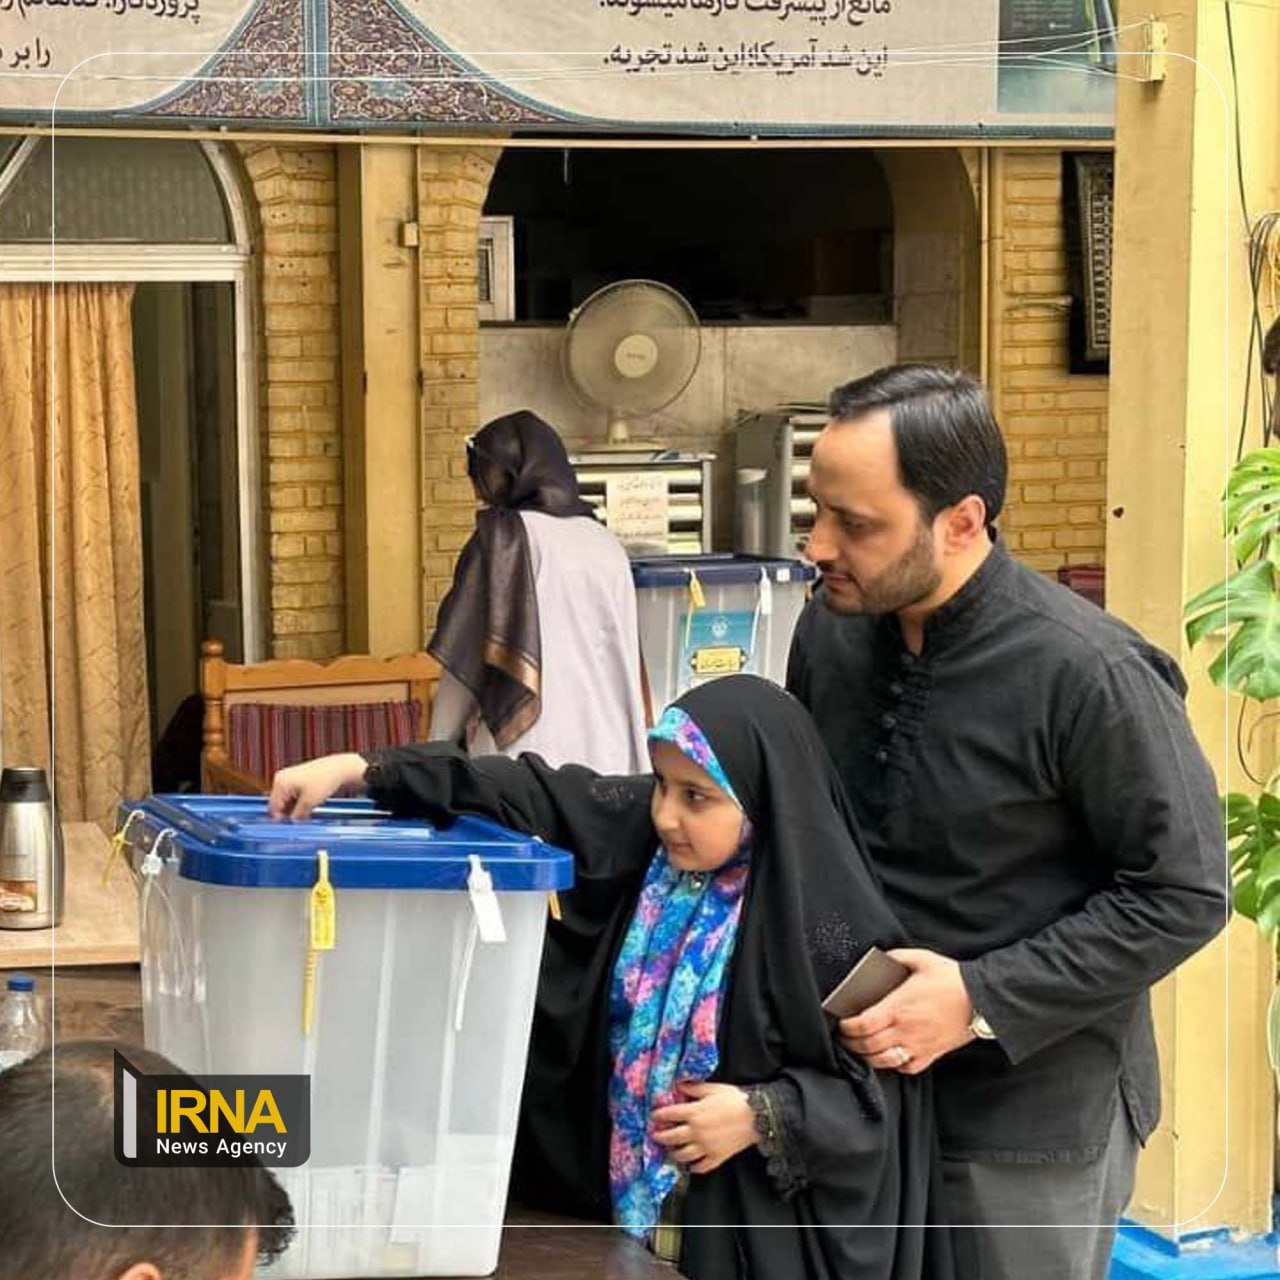 سخنگوی دولت و دخترش پای صندوق رای آمدند + عکس 2